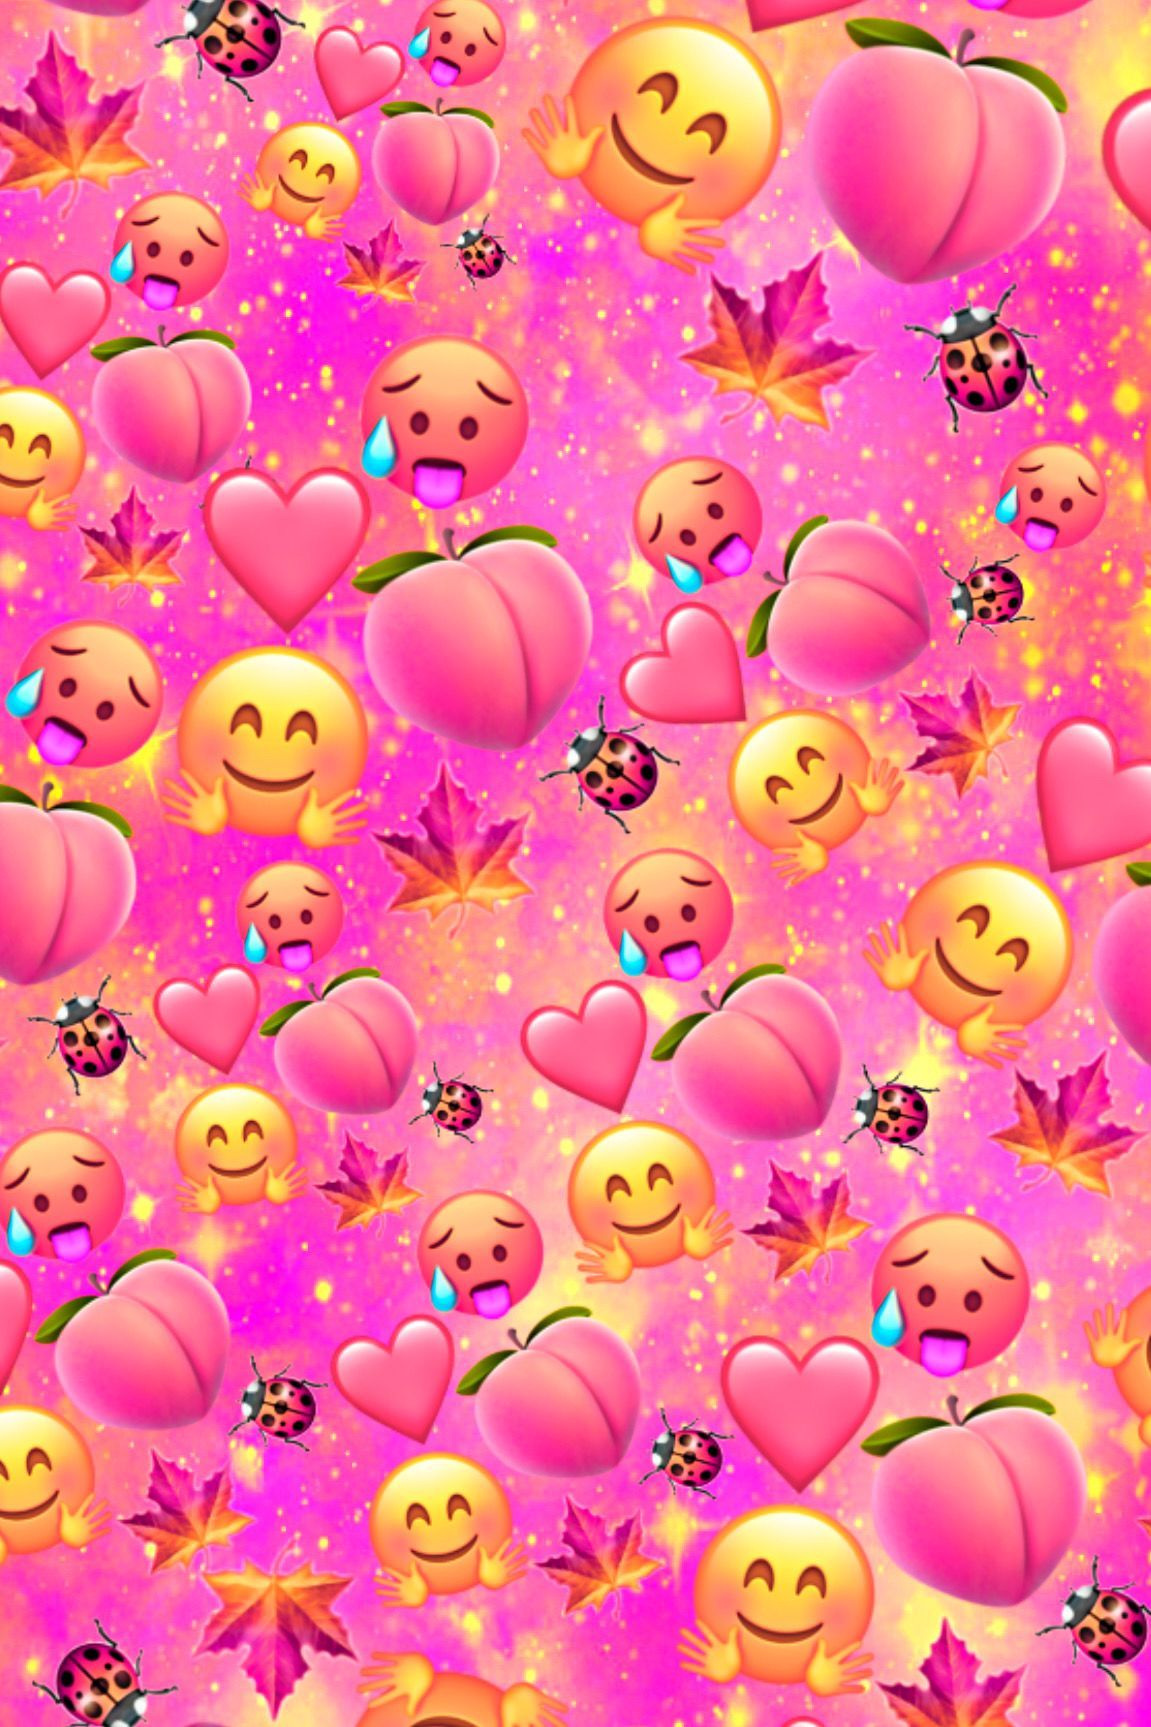 Peach Emoji Galaxy Wallpaper. Emoji wallpaper iphone, Galaxy wallpaper, Cute patterns wallpaper